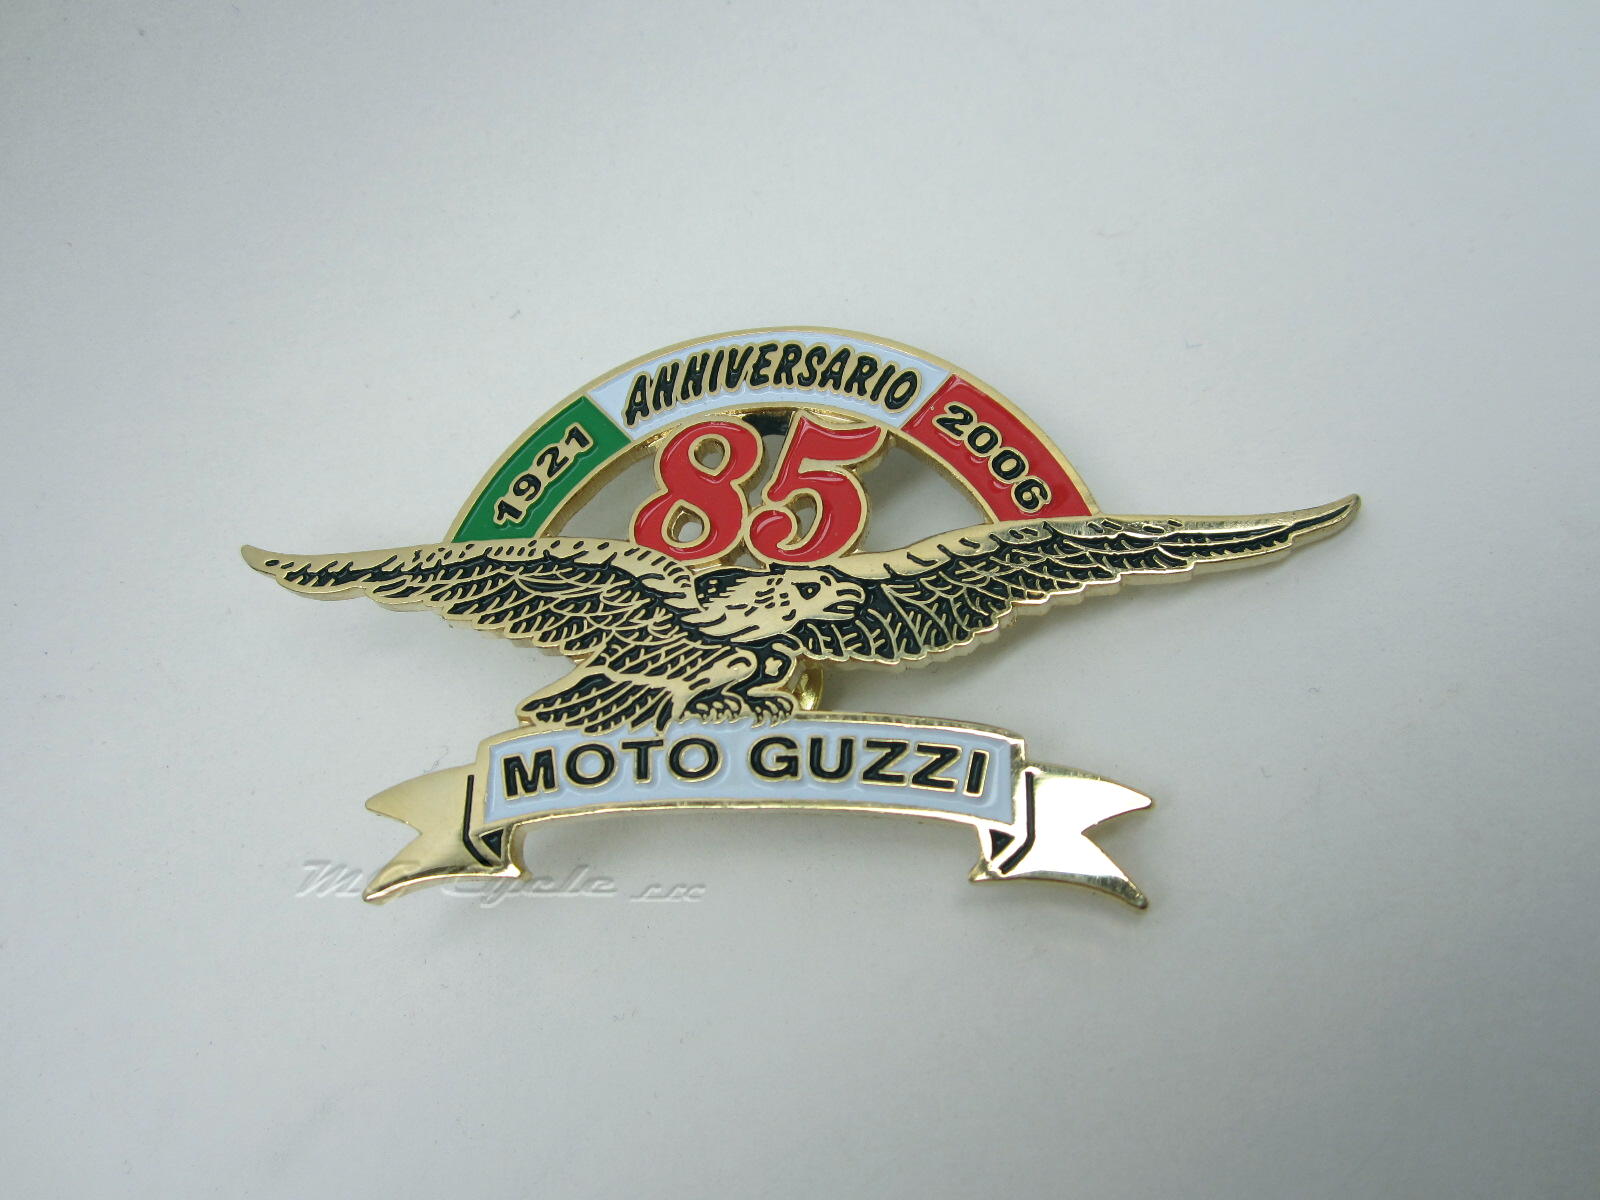 Moto Guzzi 85th Anniversary commemorative pin, 1921 - 2006